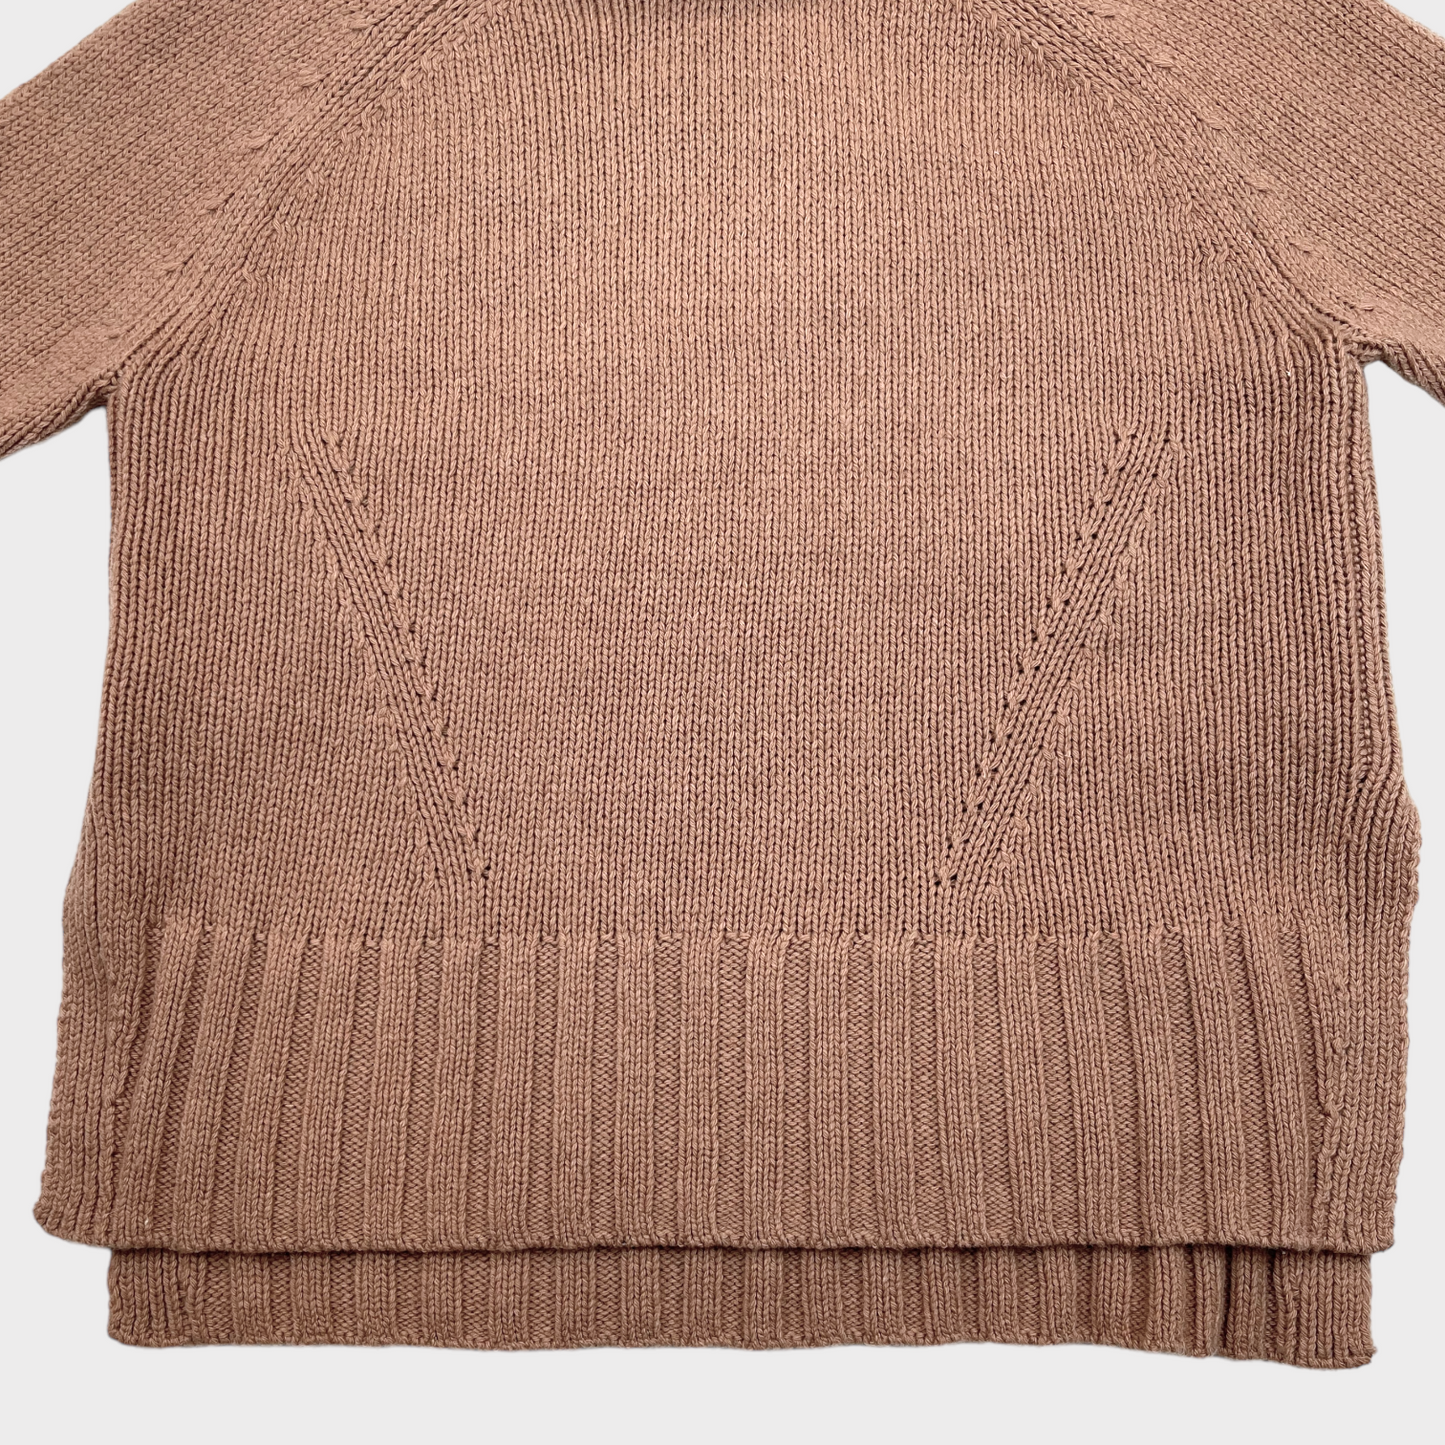 REISS Eve Wool Cashmere Blend Roll Neck Jumper Sweater Women's Size Medium